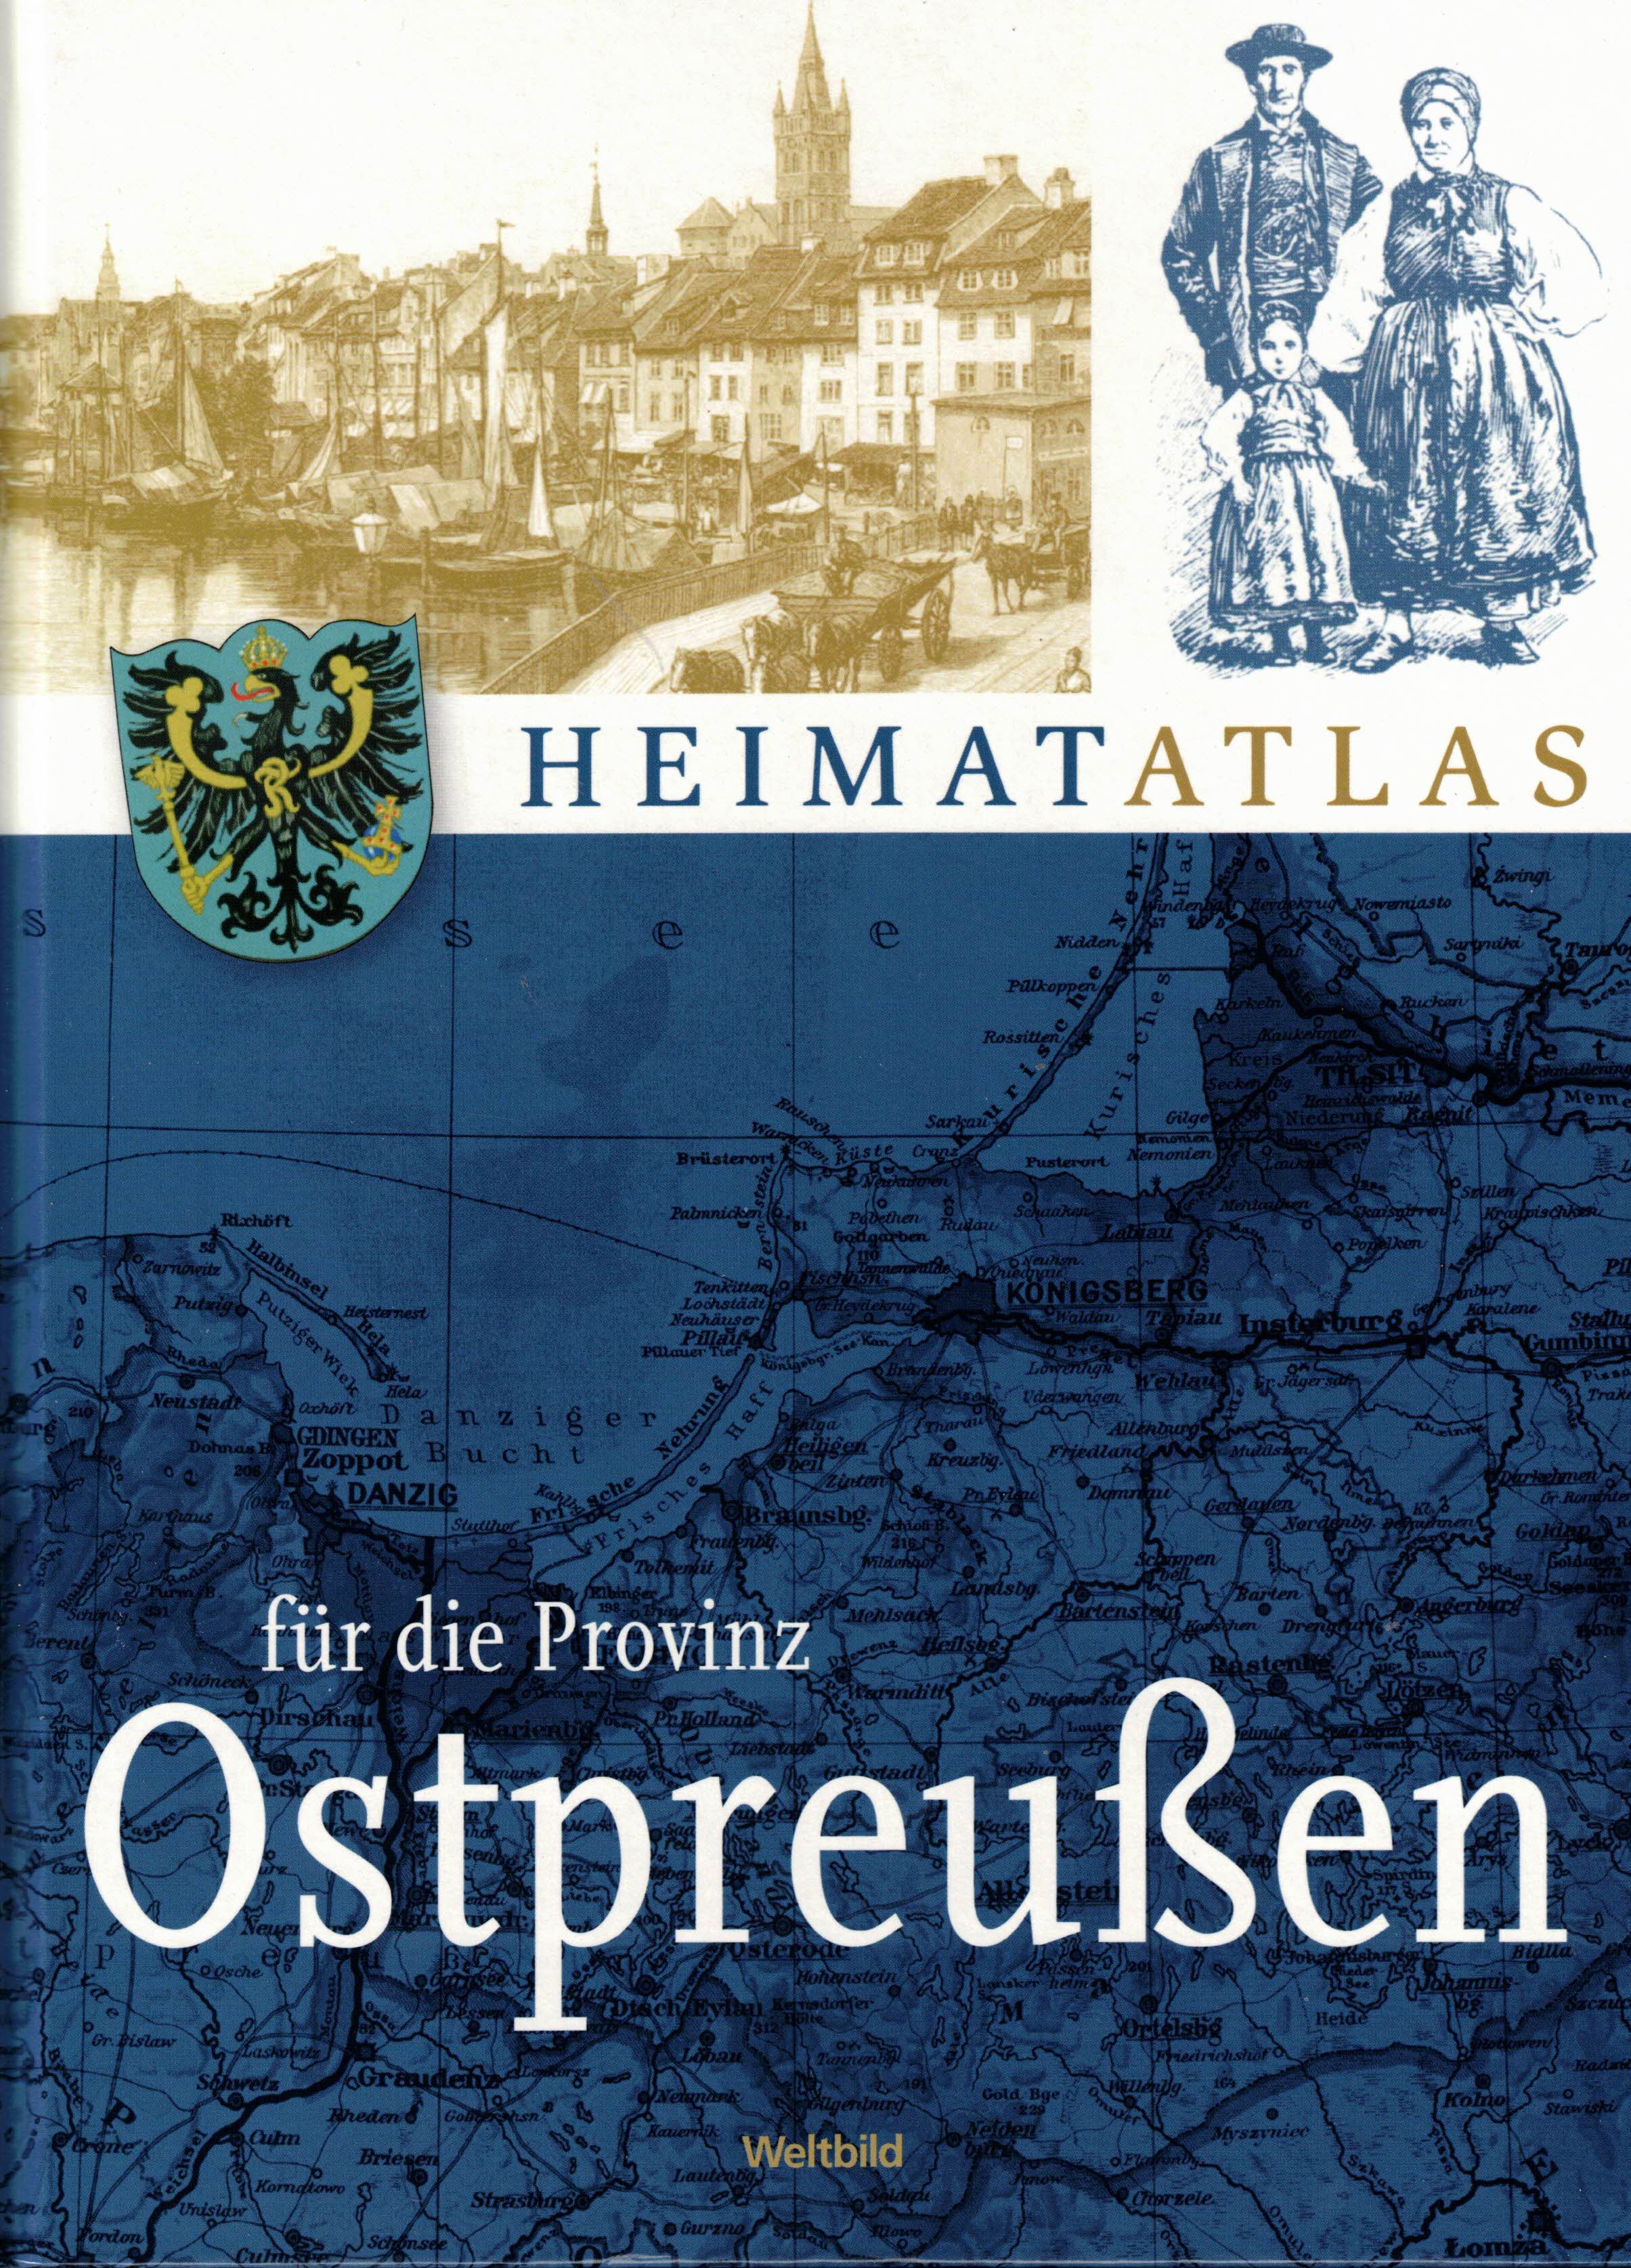 Heimatatlas für die Provinz Ostpreußen. Ergänzt mit einer Landeskunde und historischen Bildern